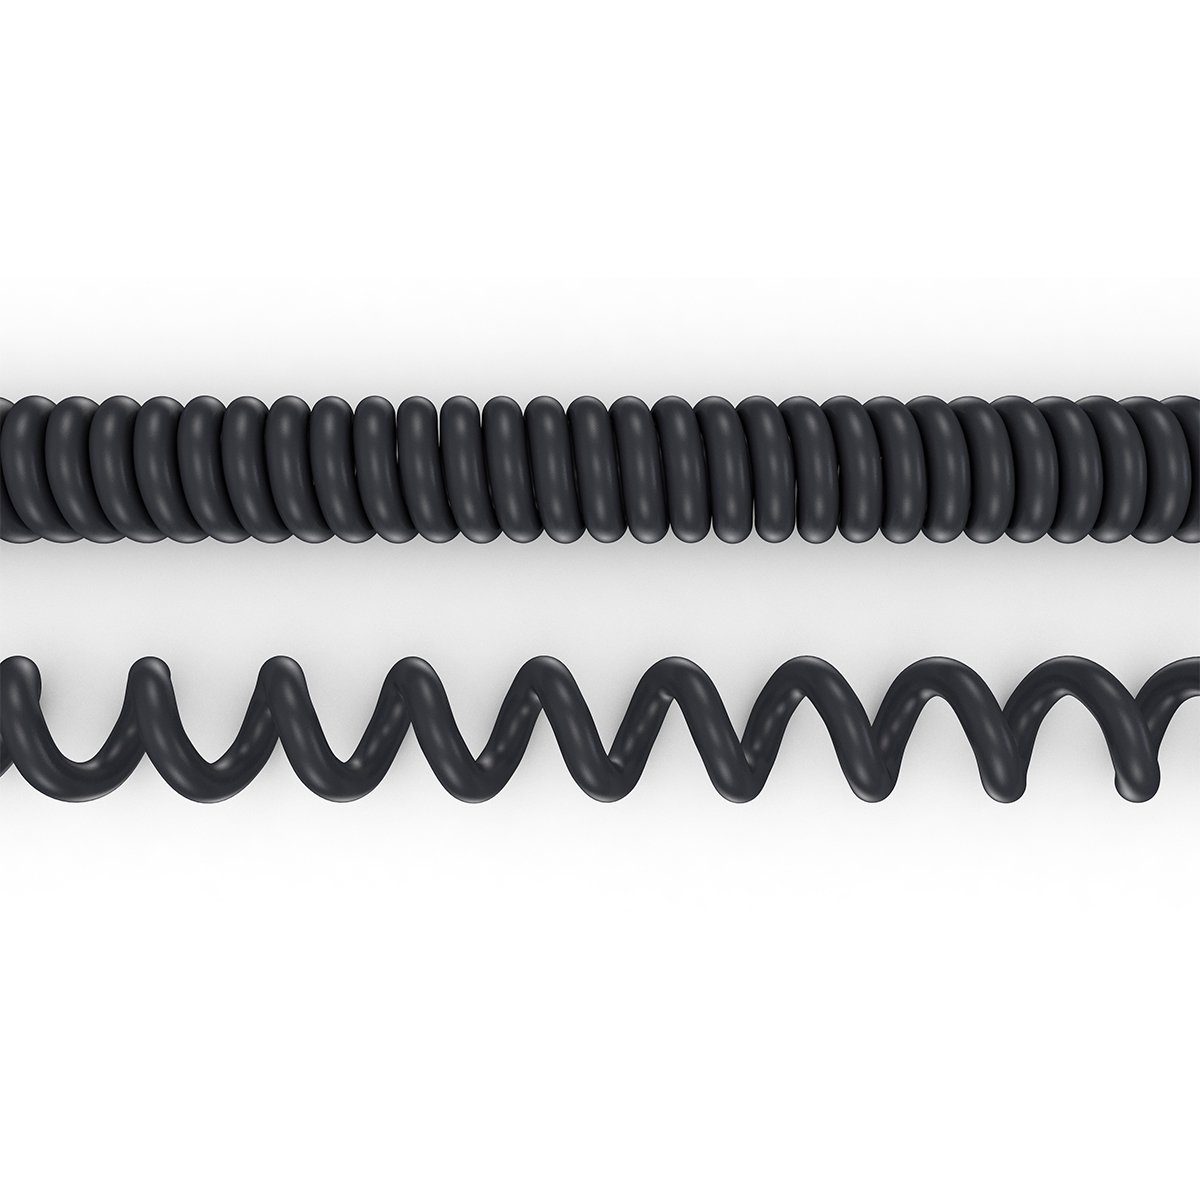 3,5mm zB Buchse Fernauslöser für Kabel-Fernauslöser Spiral Olympus Fujifilm Adapterkabel ayex